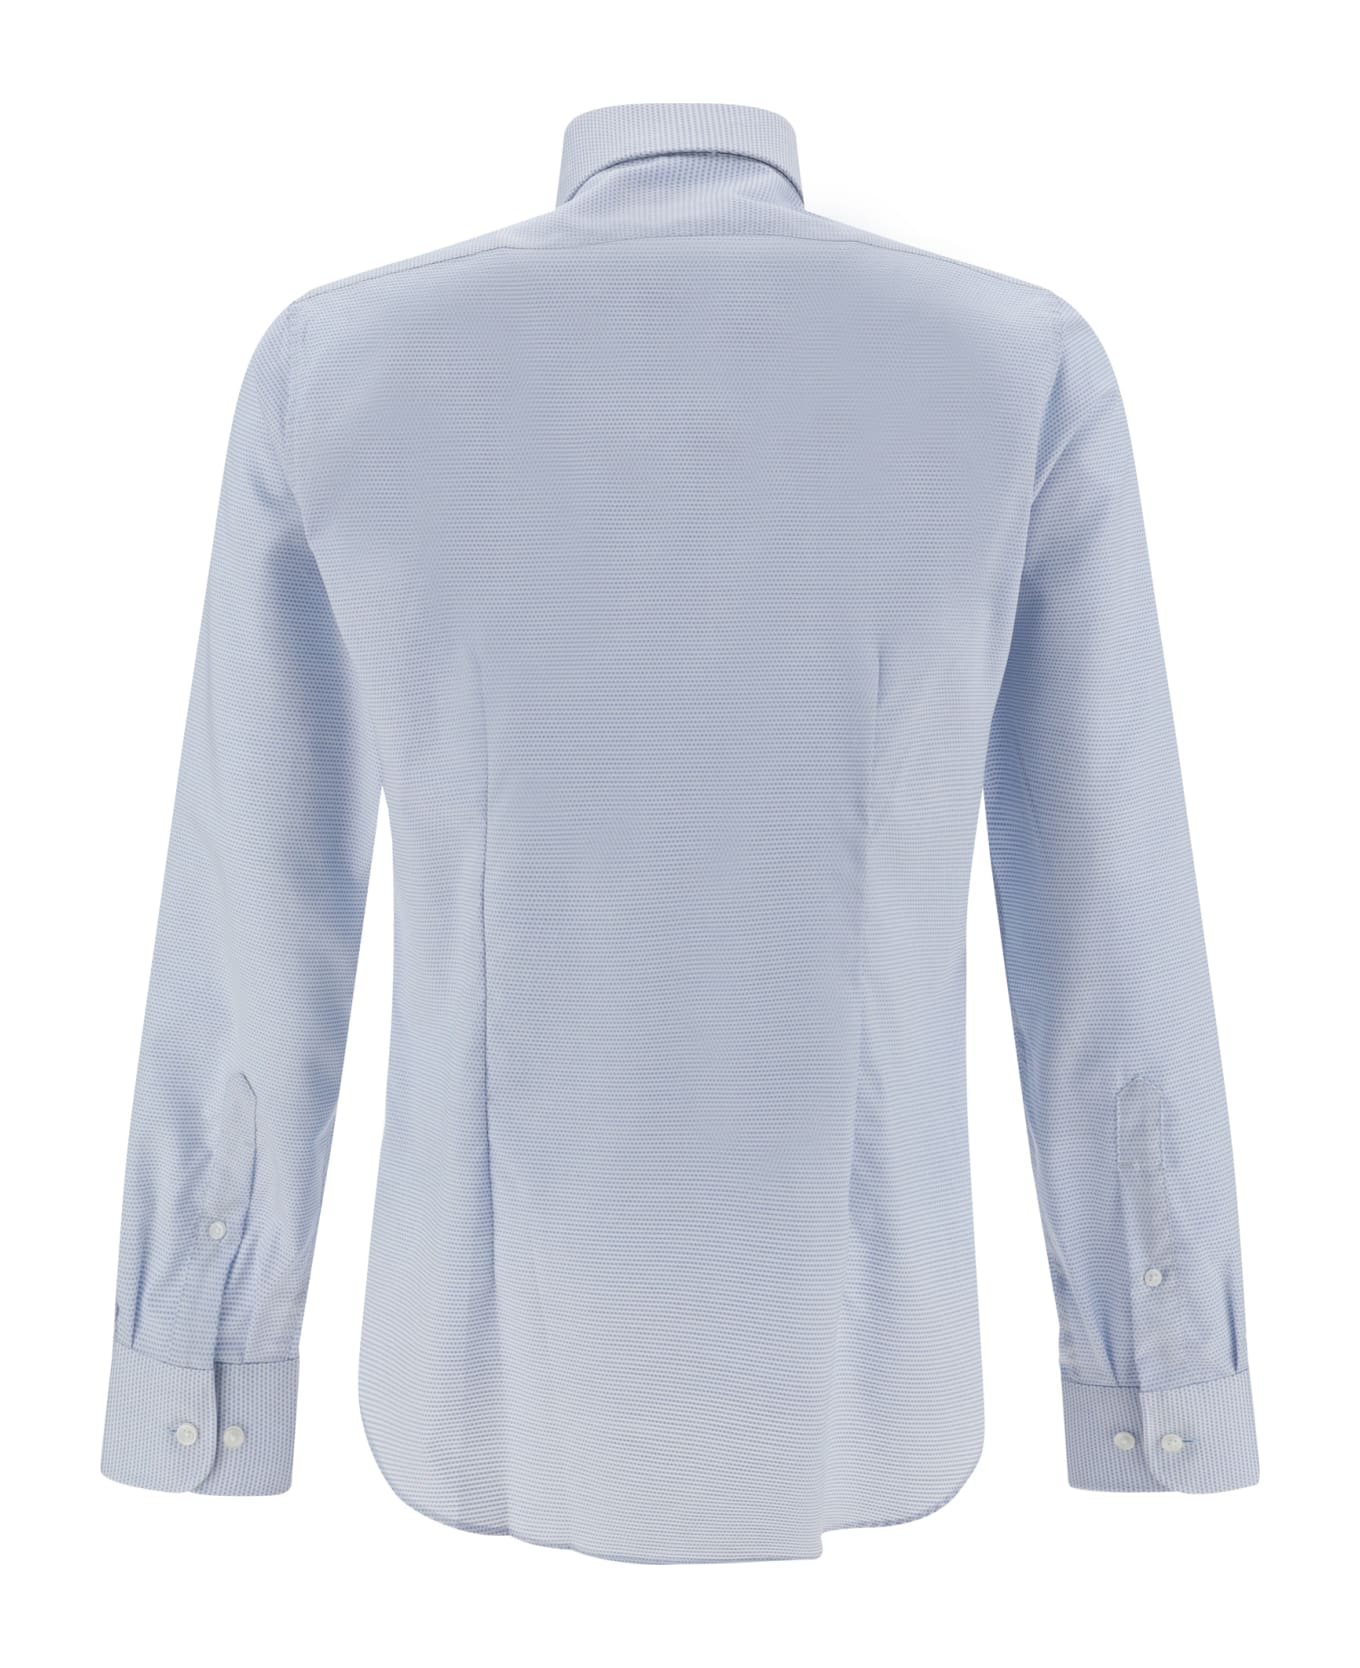 Michael Kors Dobby Business Shirt - Light Blue シャツ